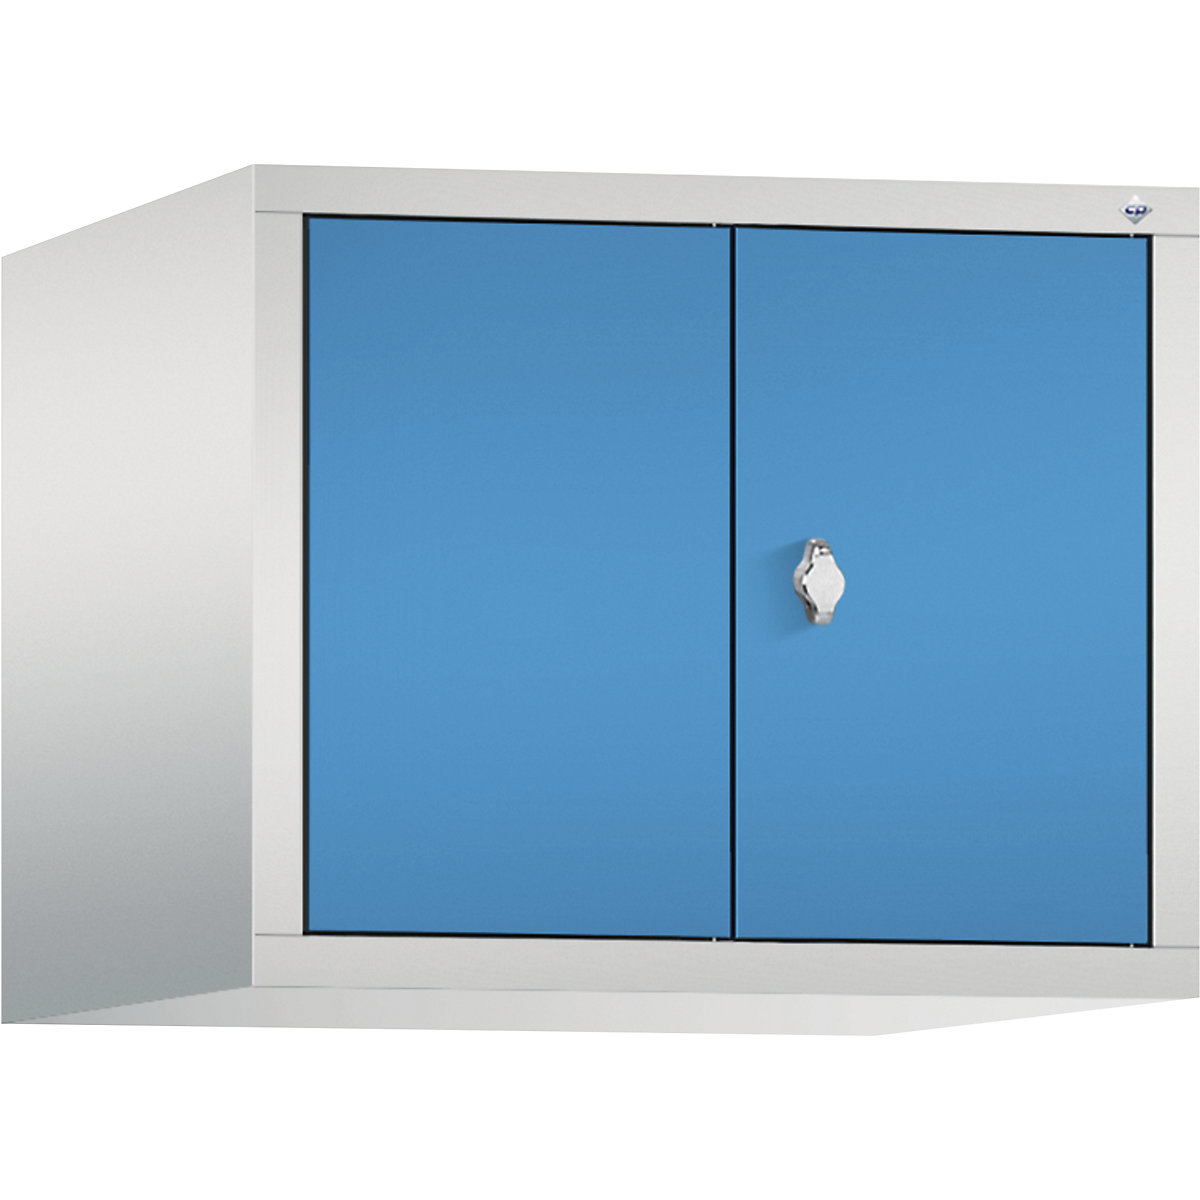 C+P – Altillo CLASSIC, puertas batientes que cierran al ras entre sí, 2 compartimentos, anchura de compartimento 300 mm, gris luminoso / azul luminoso